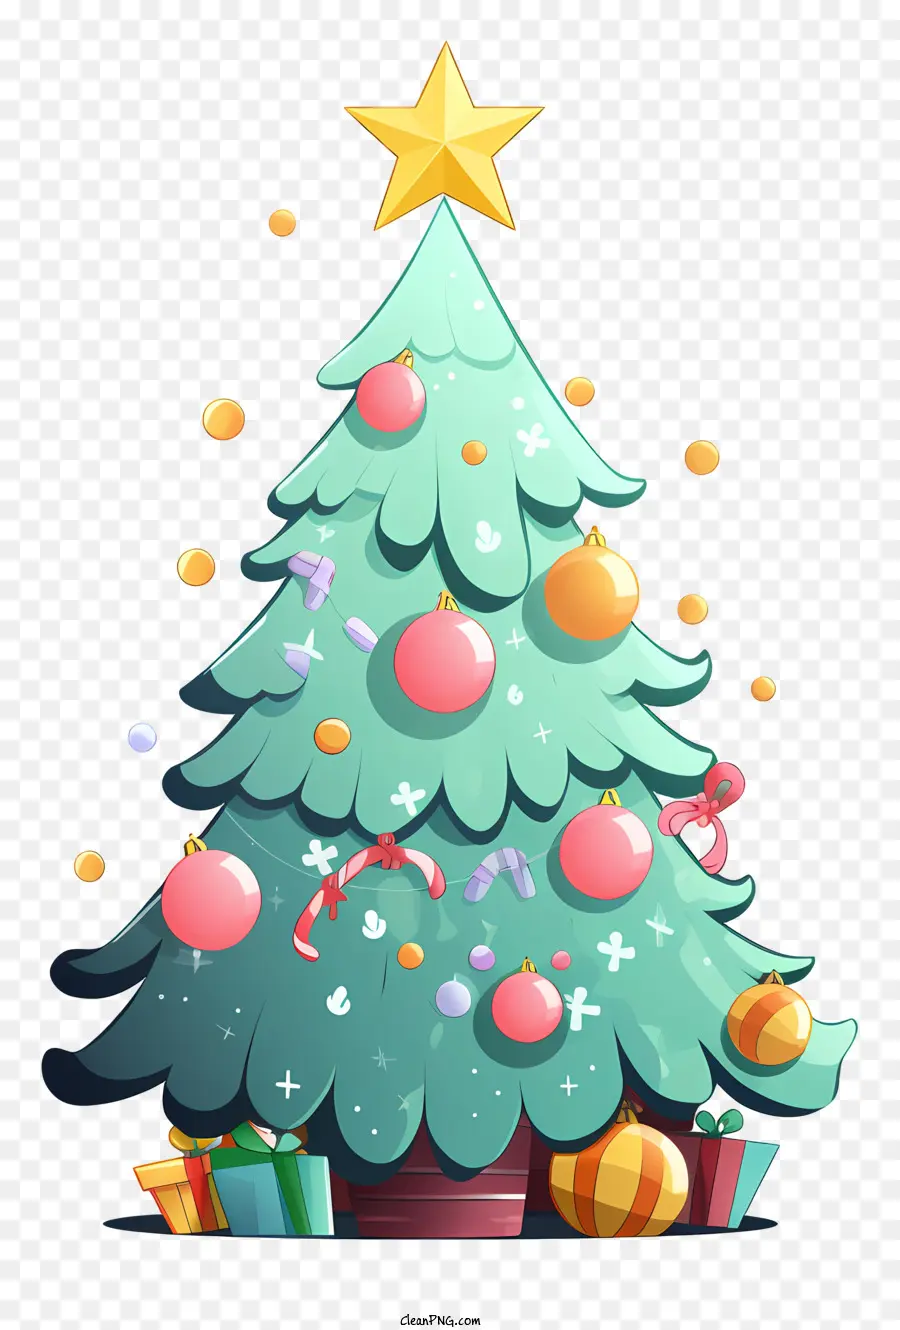 Desenho Animado Da árvore De Natal，Imagem Da árvore De Natal PNG